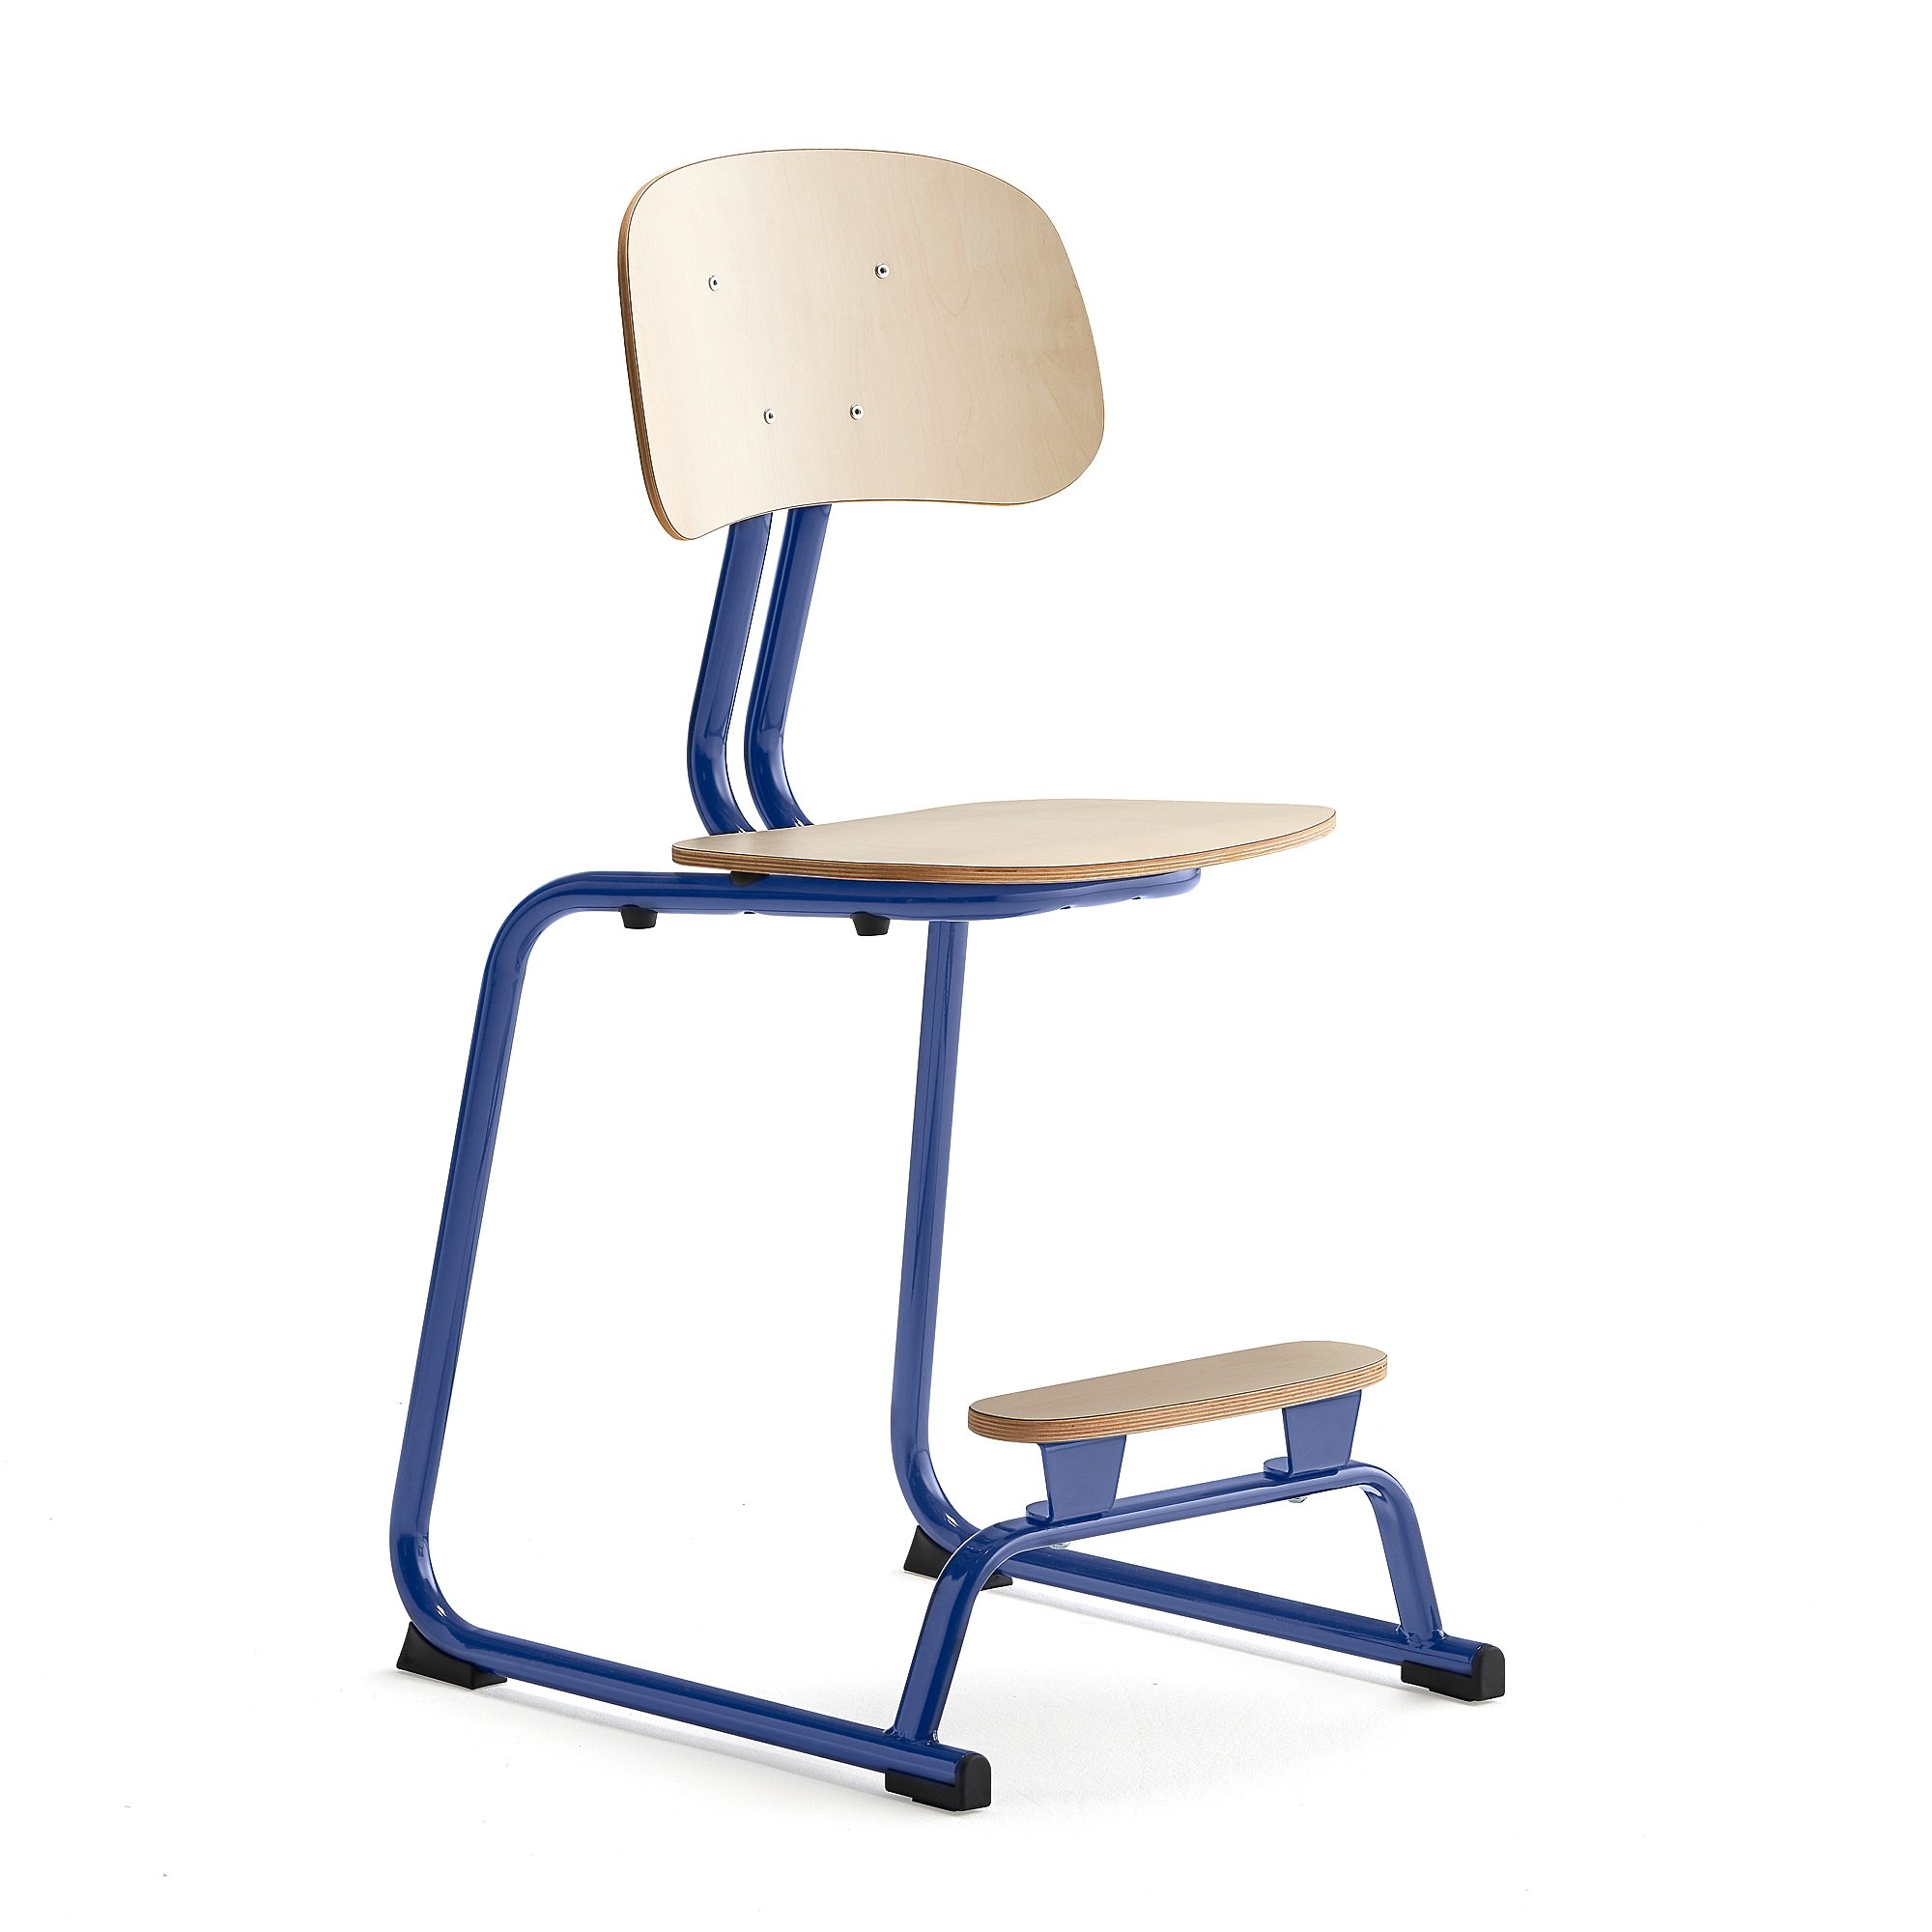 Školní židle YNGVE, ližinová podnož, výška 520 mm, tmavě modrá/bříza